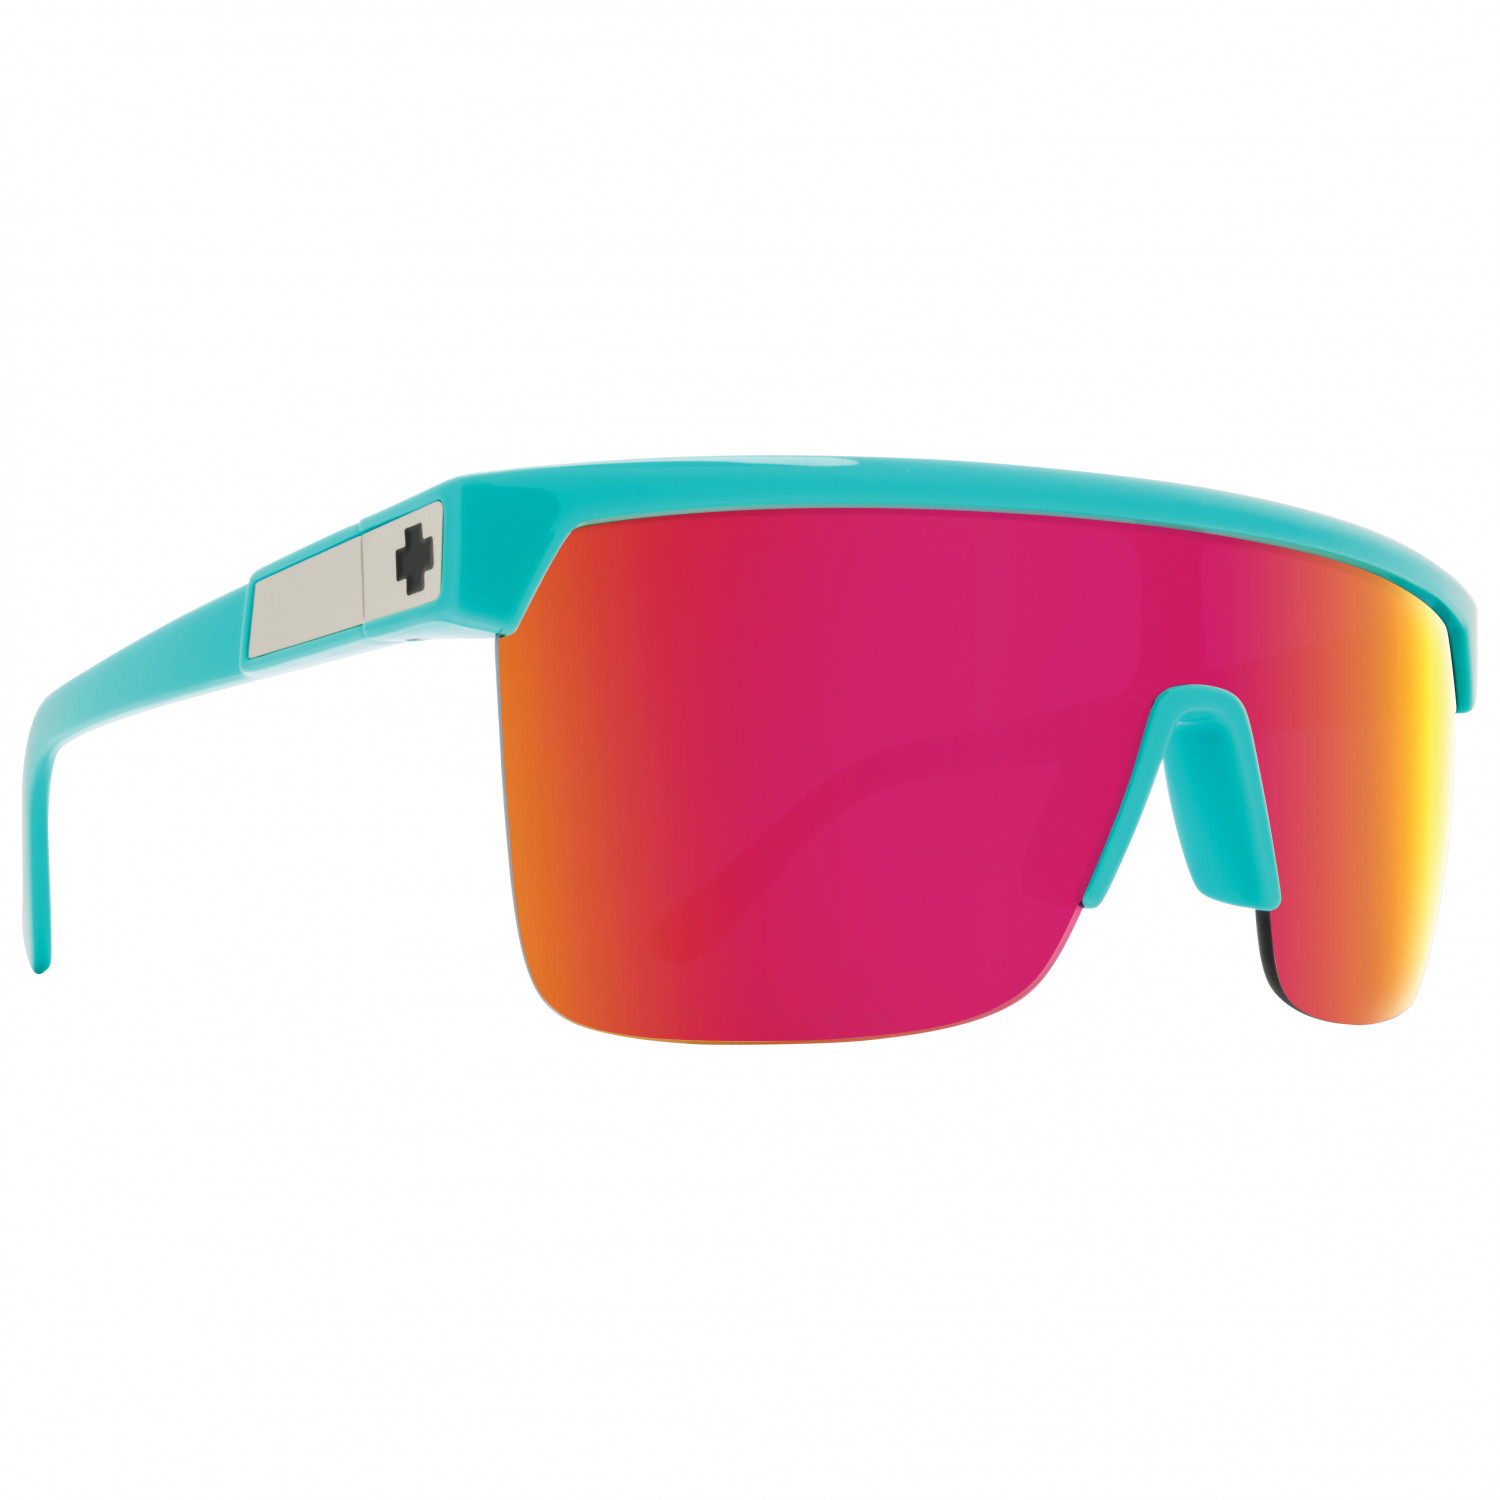 Солнцезащитные очки Spy+ Flynn 5050 S3 (VLT 13 17%), цвет Teal